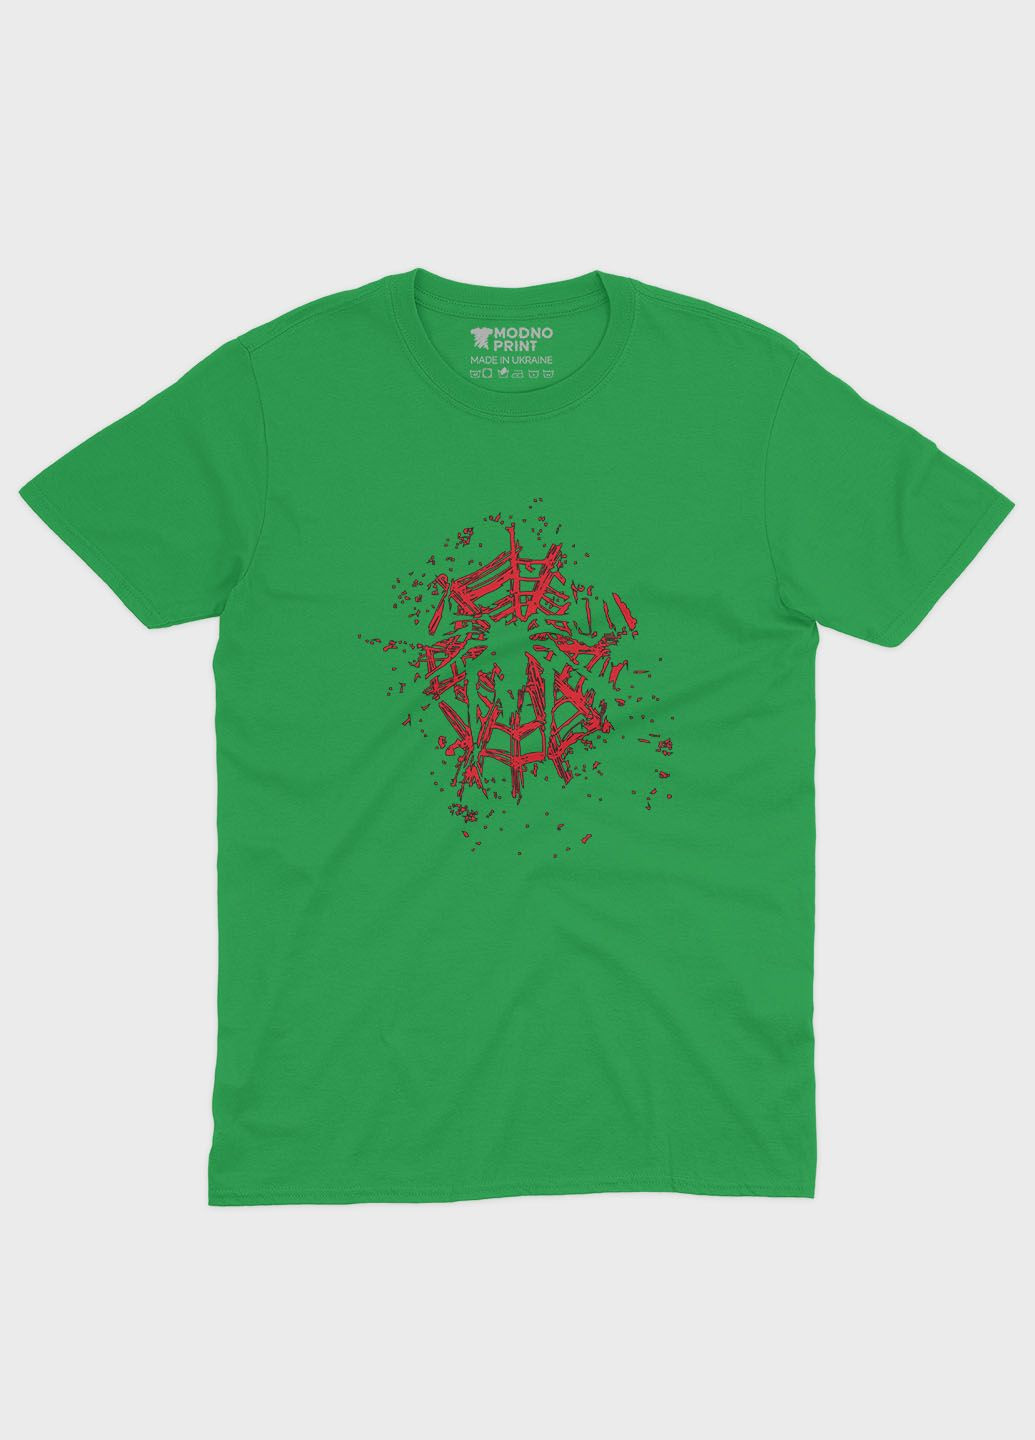 Зеленая демисезонная футболка для мальчика с принтом супергероя - человек-паук (ts001-1-keg-006-014-003-b) Modno